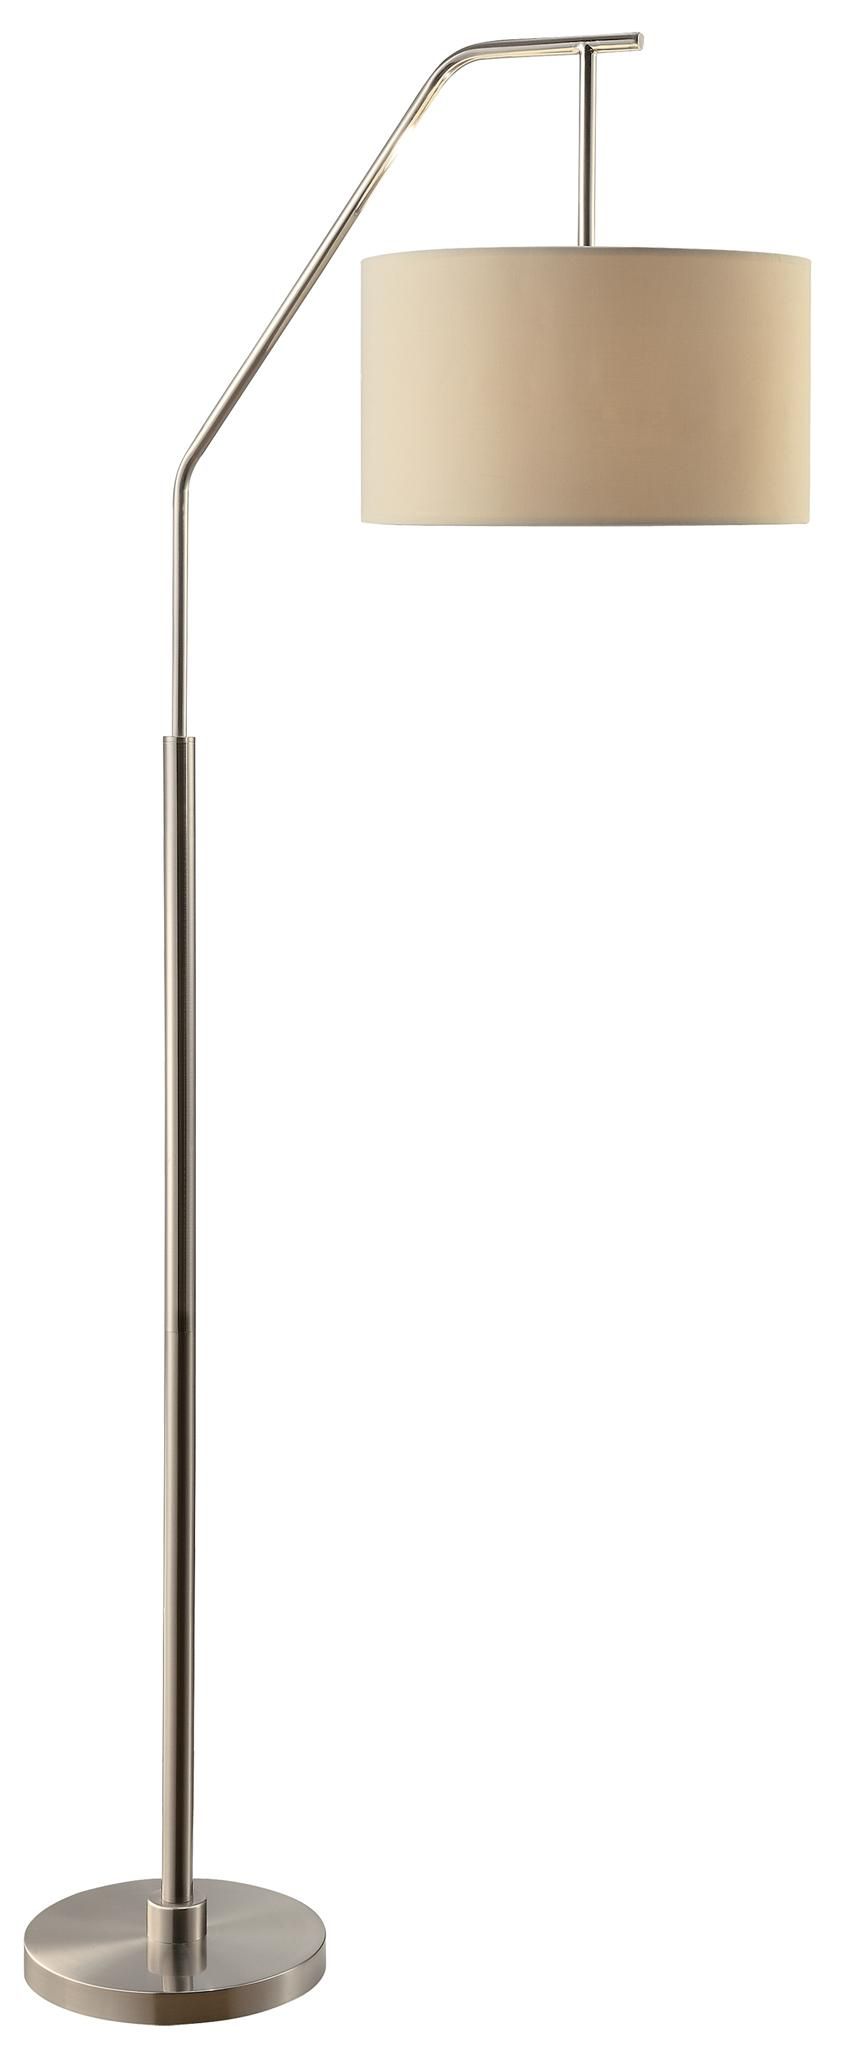 Dinsmore 72 Inch Floor Lamp, Brushed Nickel – Walmart Regarding 72 Inch Floor Lamps (Photo 1 of 15)